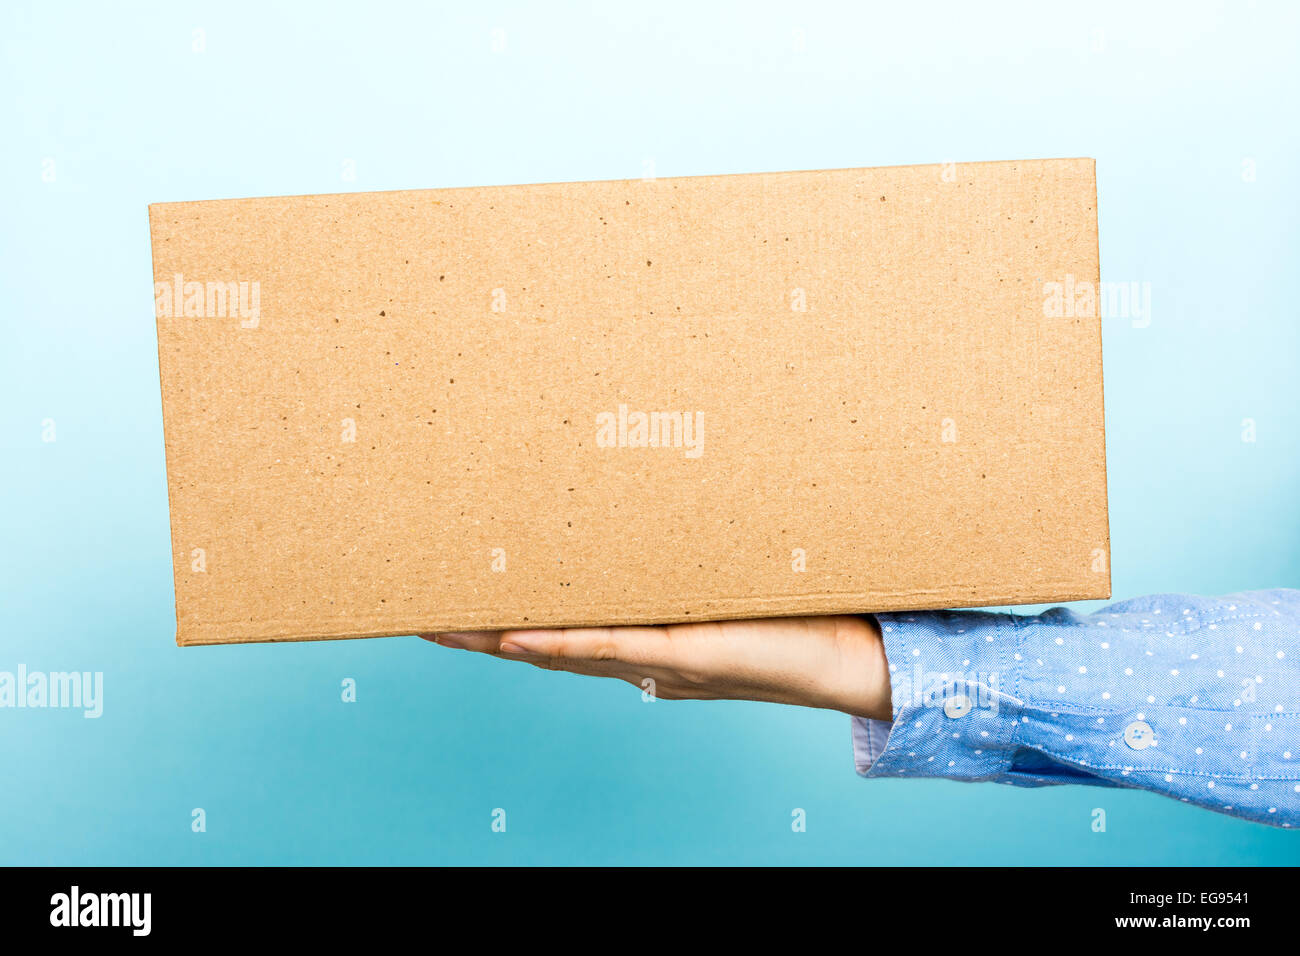 Femme pesant une boîte en carton avec sa main. Utile pour l'annonce, les informations d'expédition, ainsi de suite. Banque D'Images